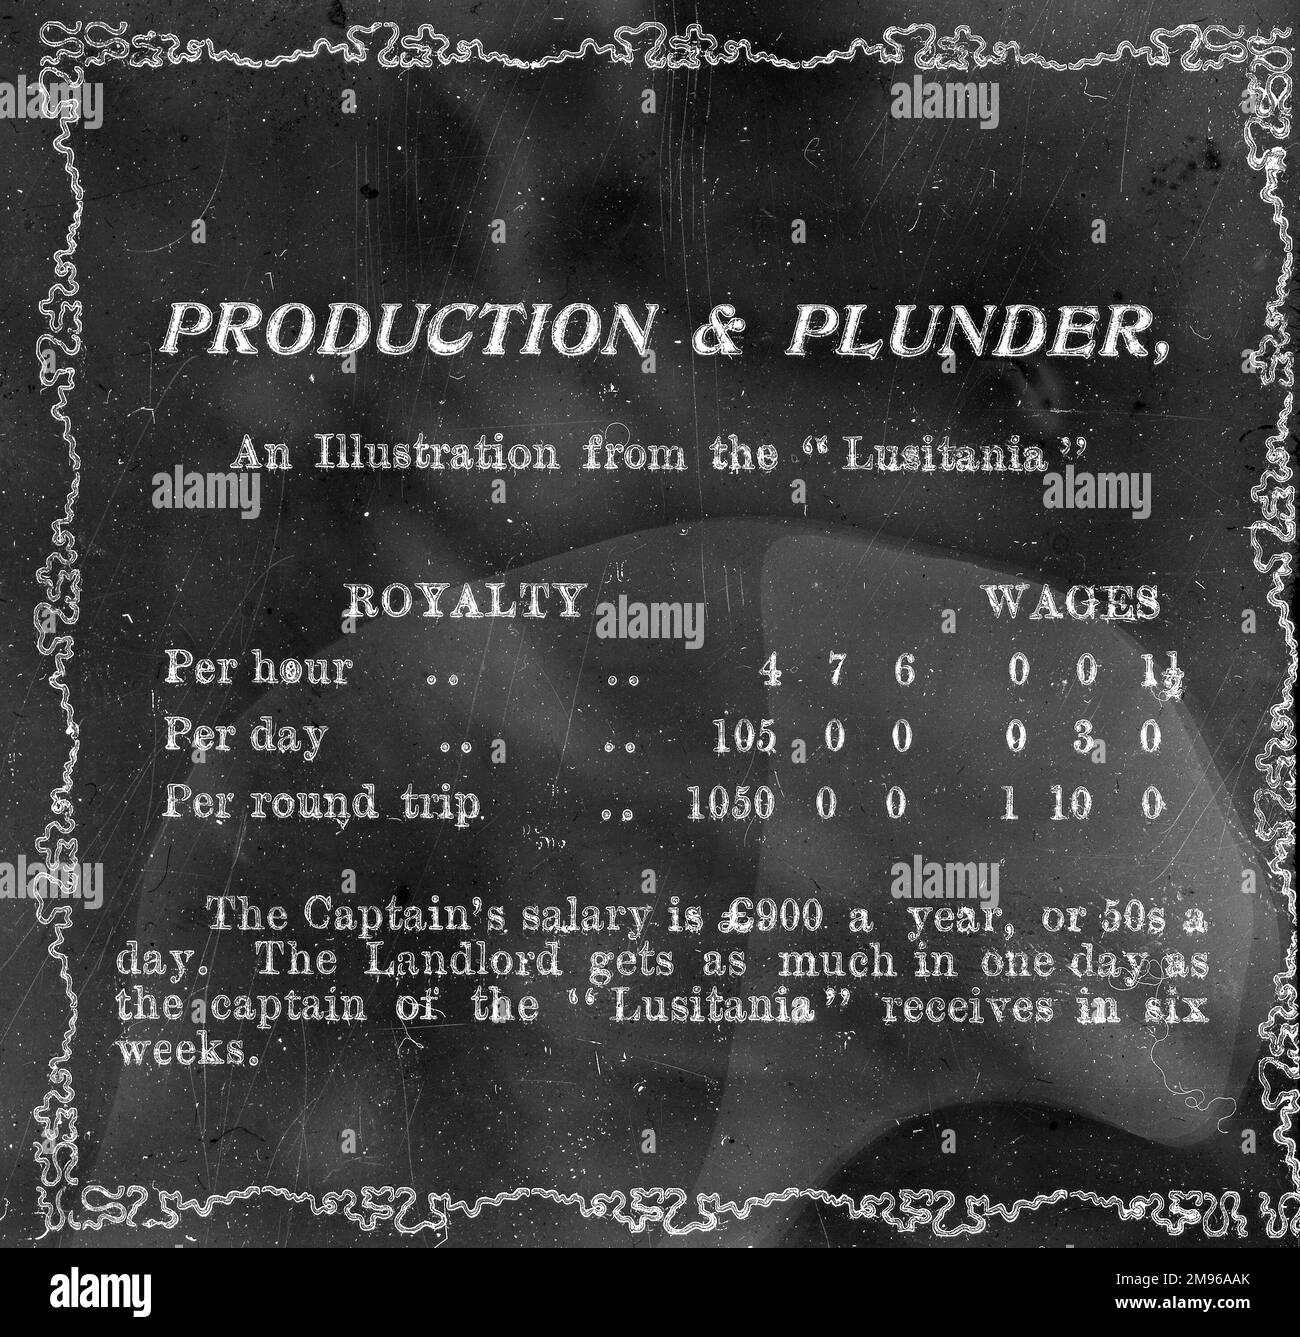 Eine Folie mit dem Titel Production & Plunder, die für einen Vortrag über die South Wales Miners Federation verwendet wird. Es sind Statistiken aufgeführt, in denen die Lizenzgebühren für die Nutzung von Kohle auf dem Luxusdampfer Lusitania mit den Löhnen der Bergleute verglichen werden. Stockfoto